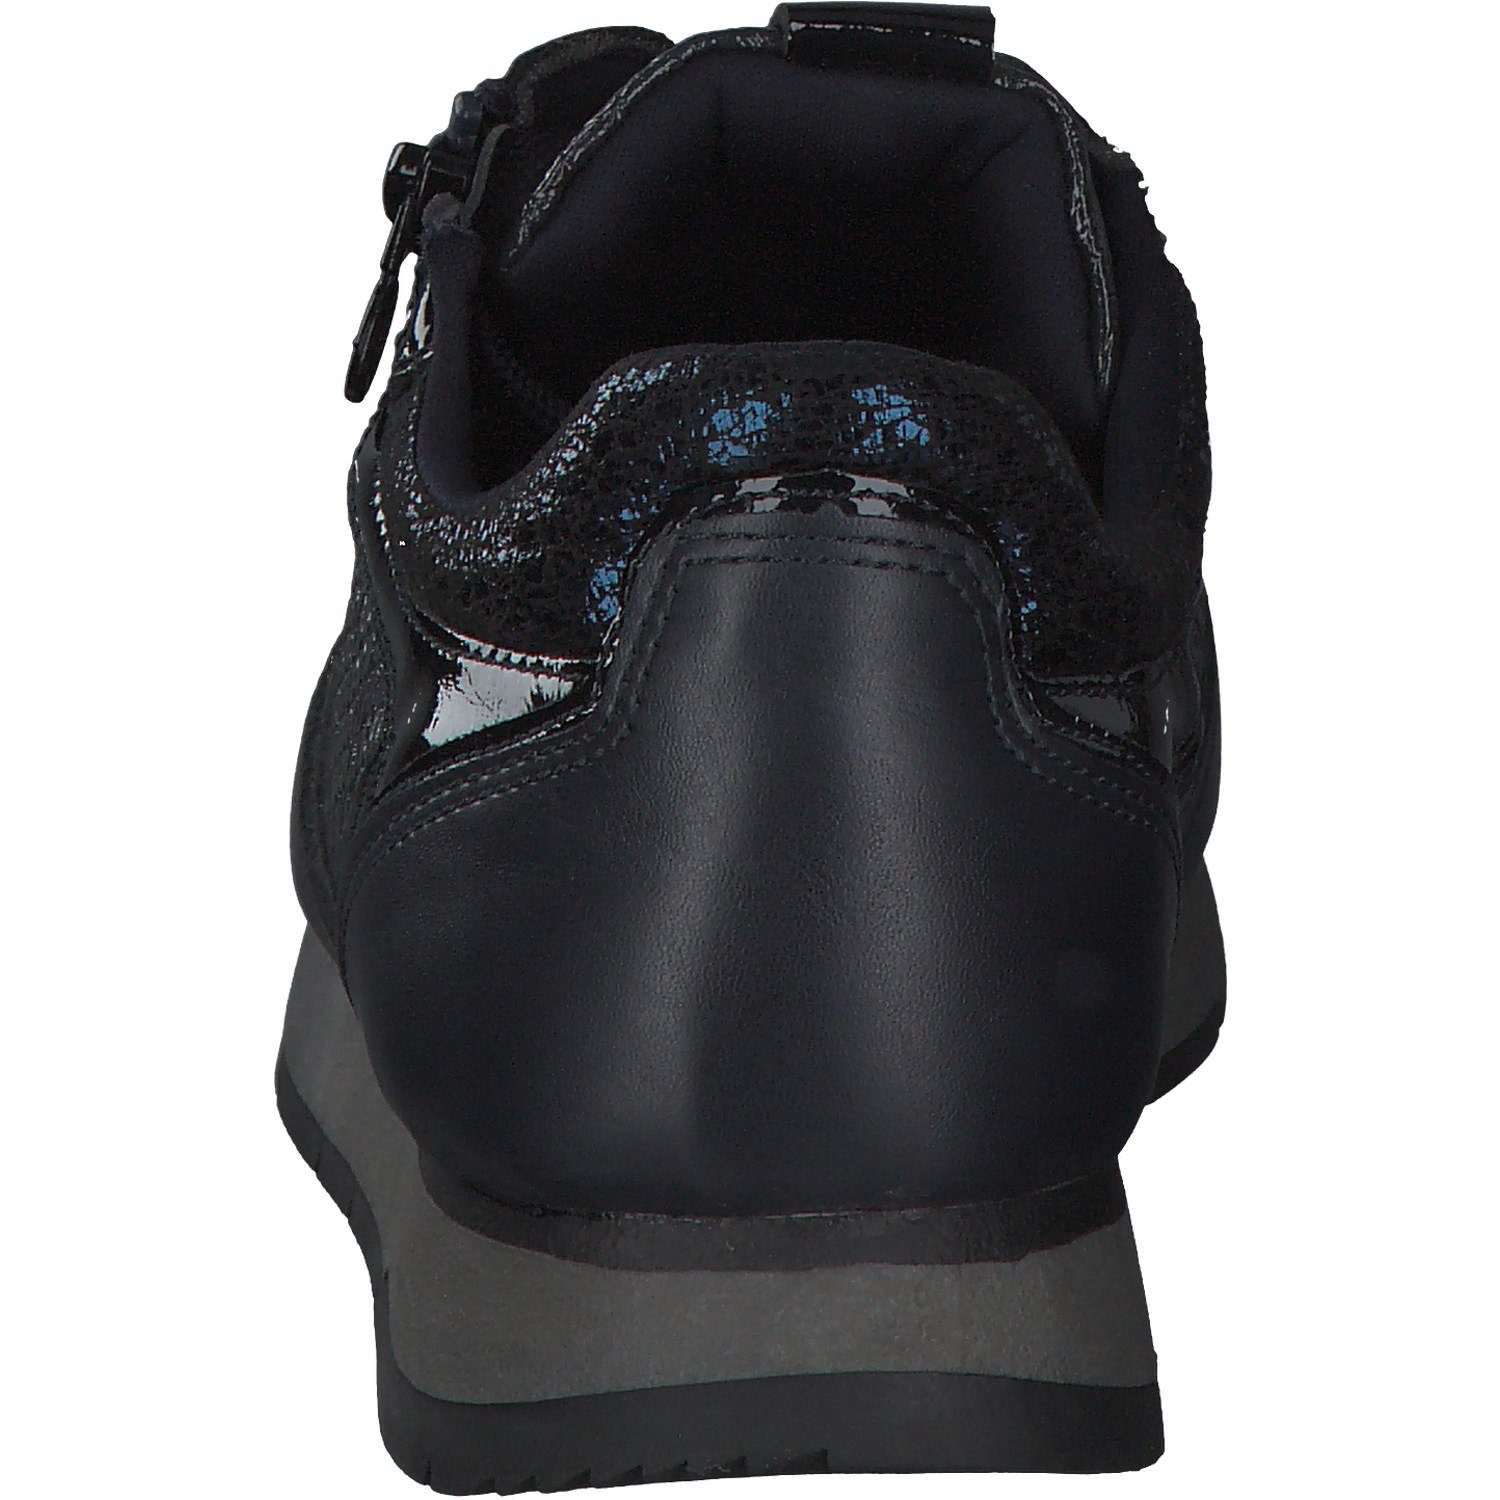 Tamaris Tamaris 23603 Comb) Sneaker Blau (Navy (21203610)